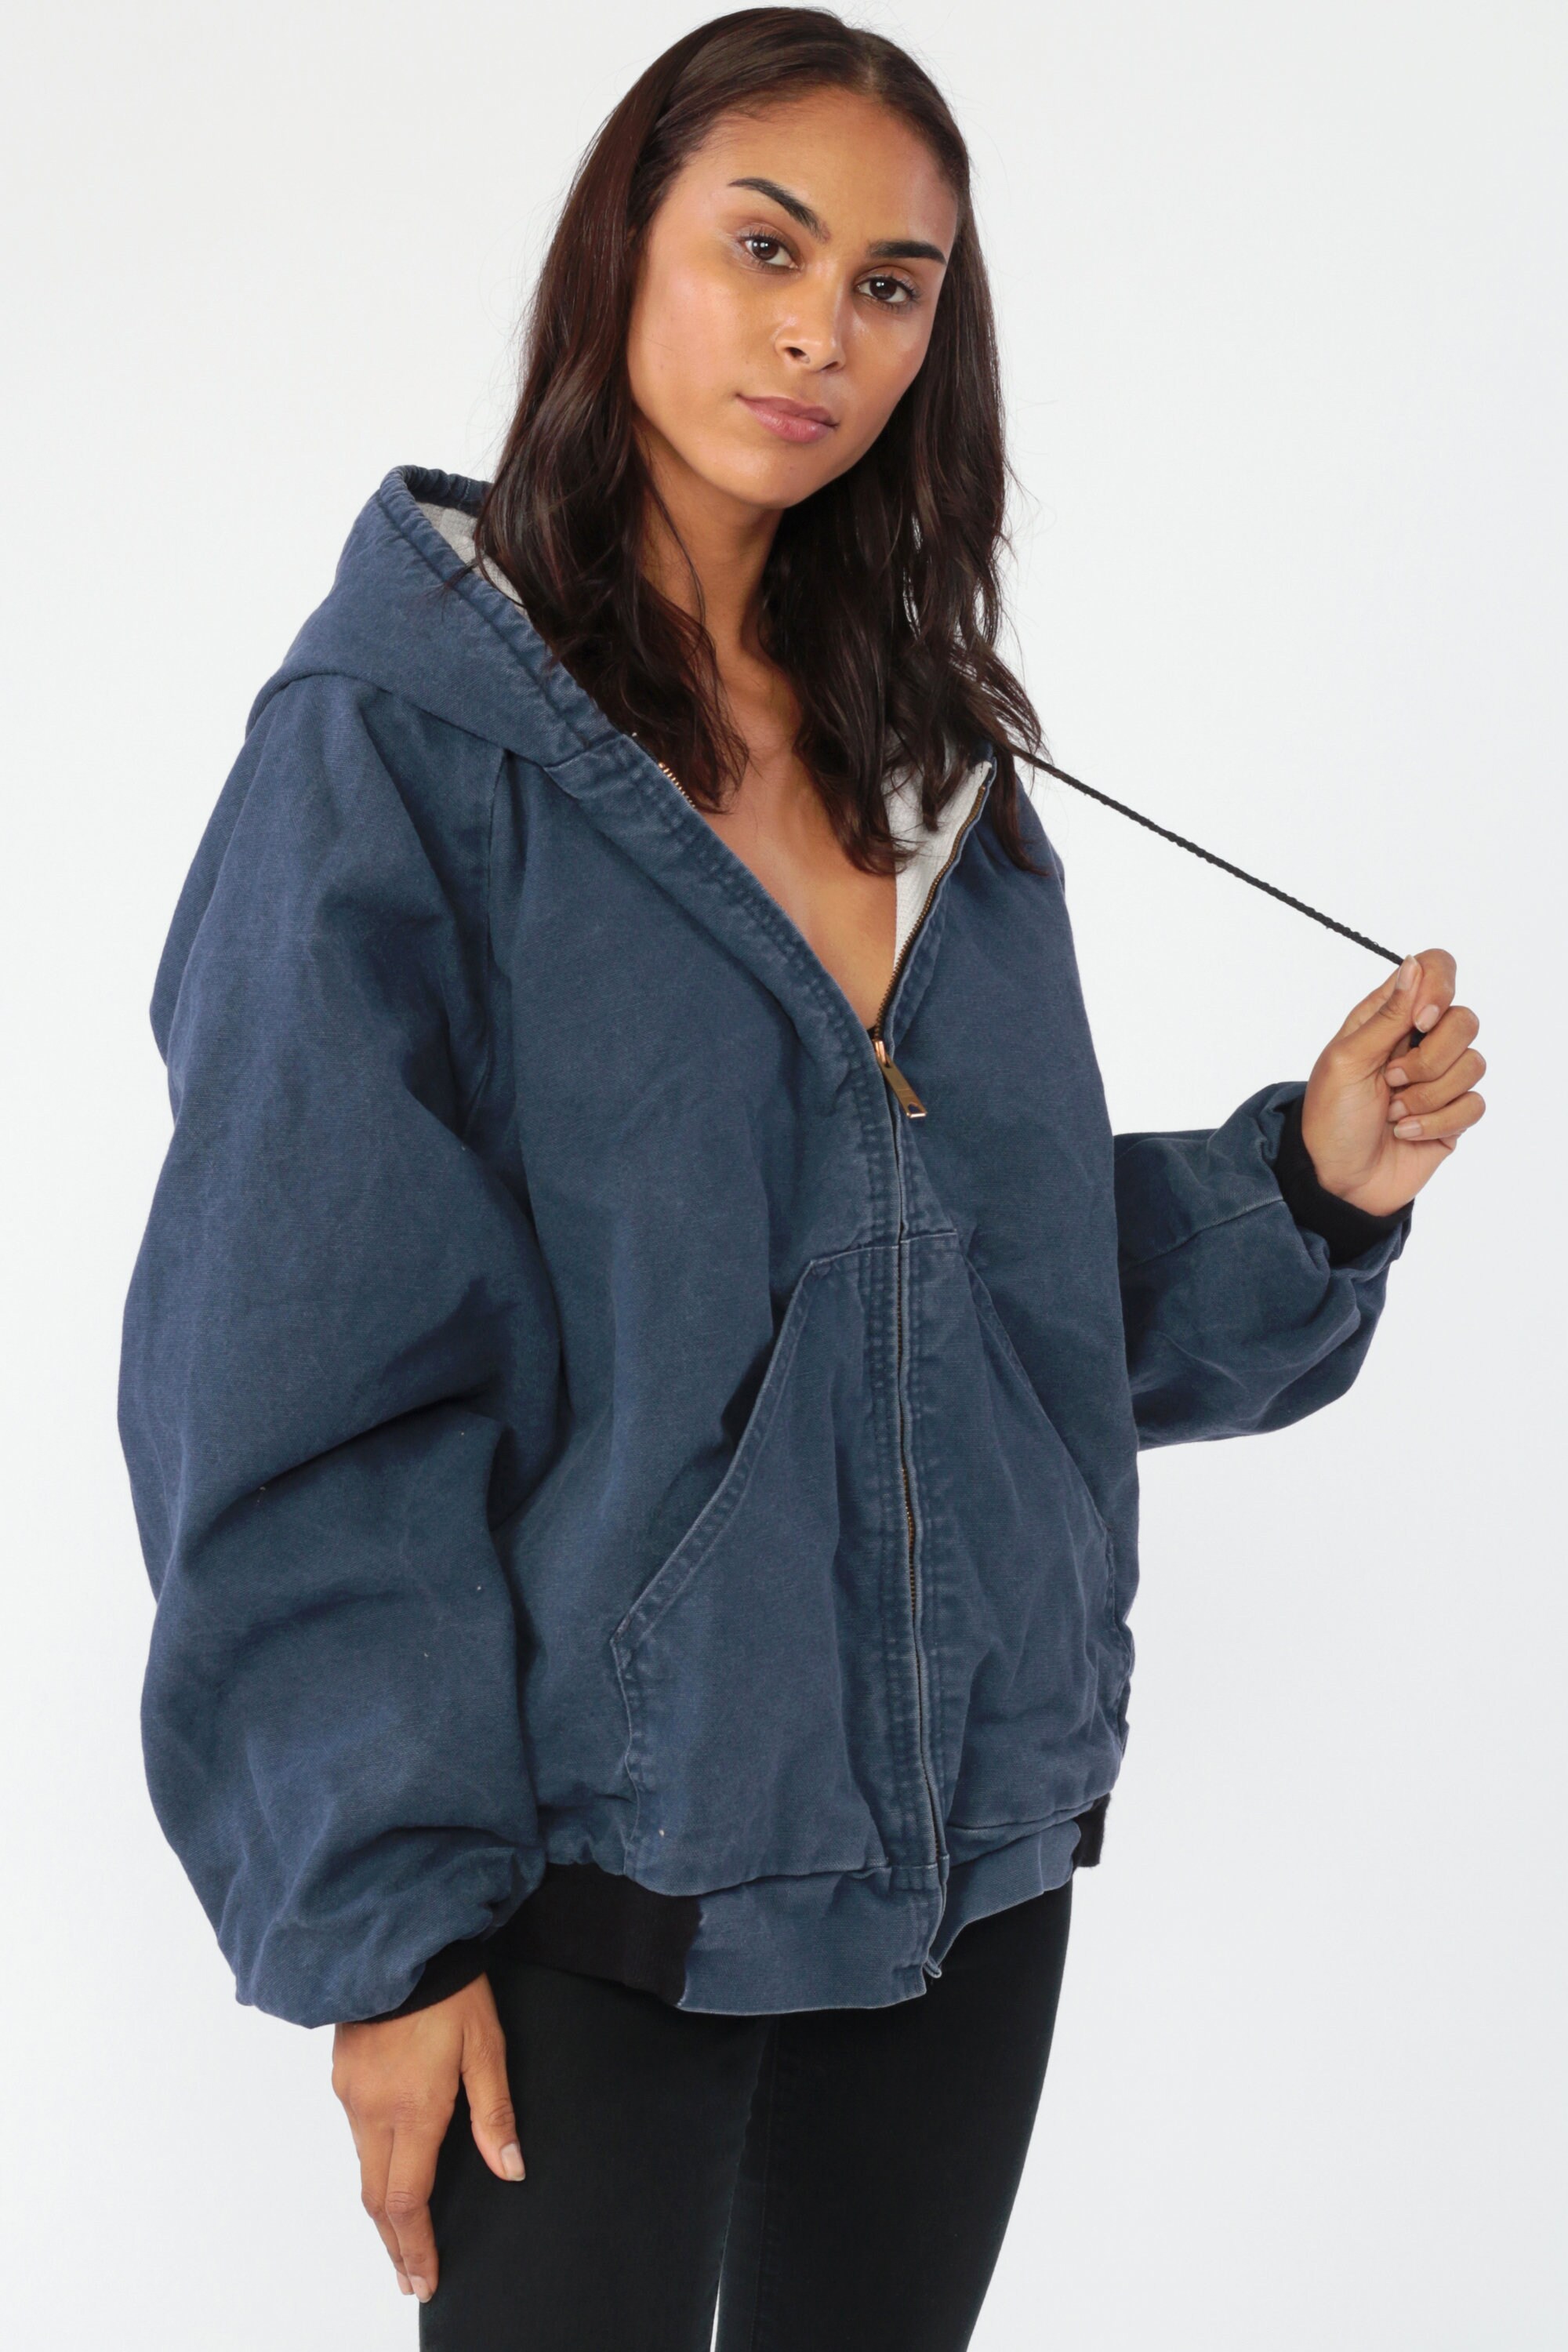 Hoodie Jacket Workwear Jacket Cotton HOODED 90s Utility Dark Blue Hood ...